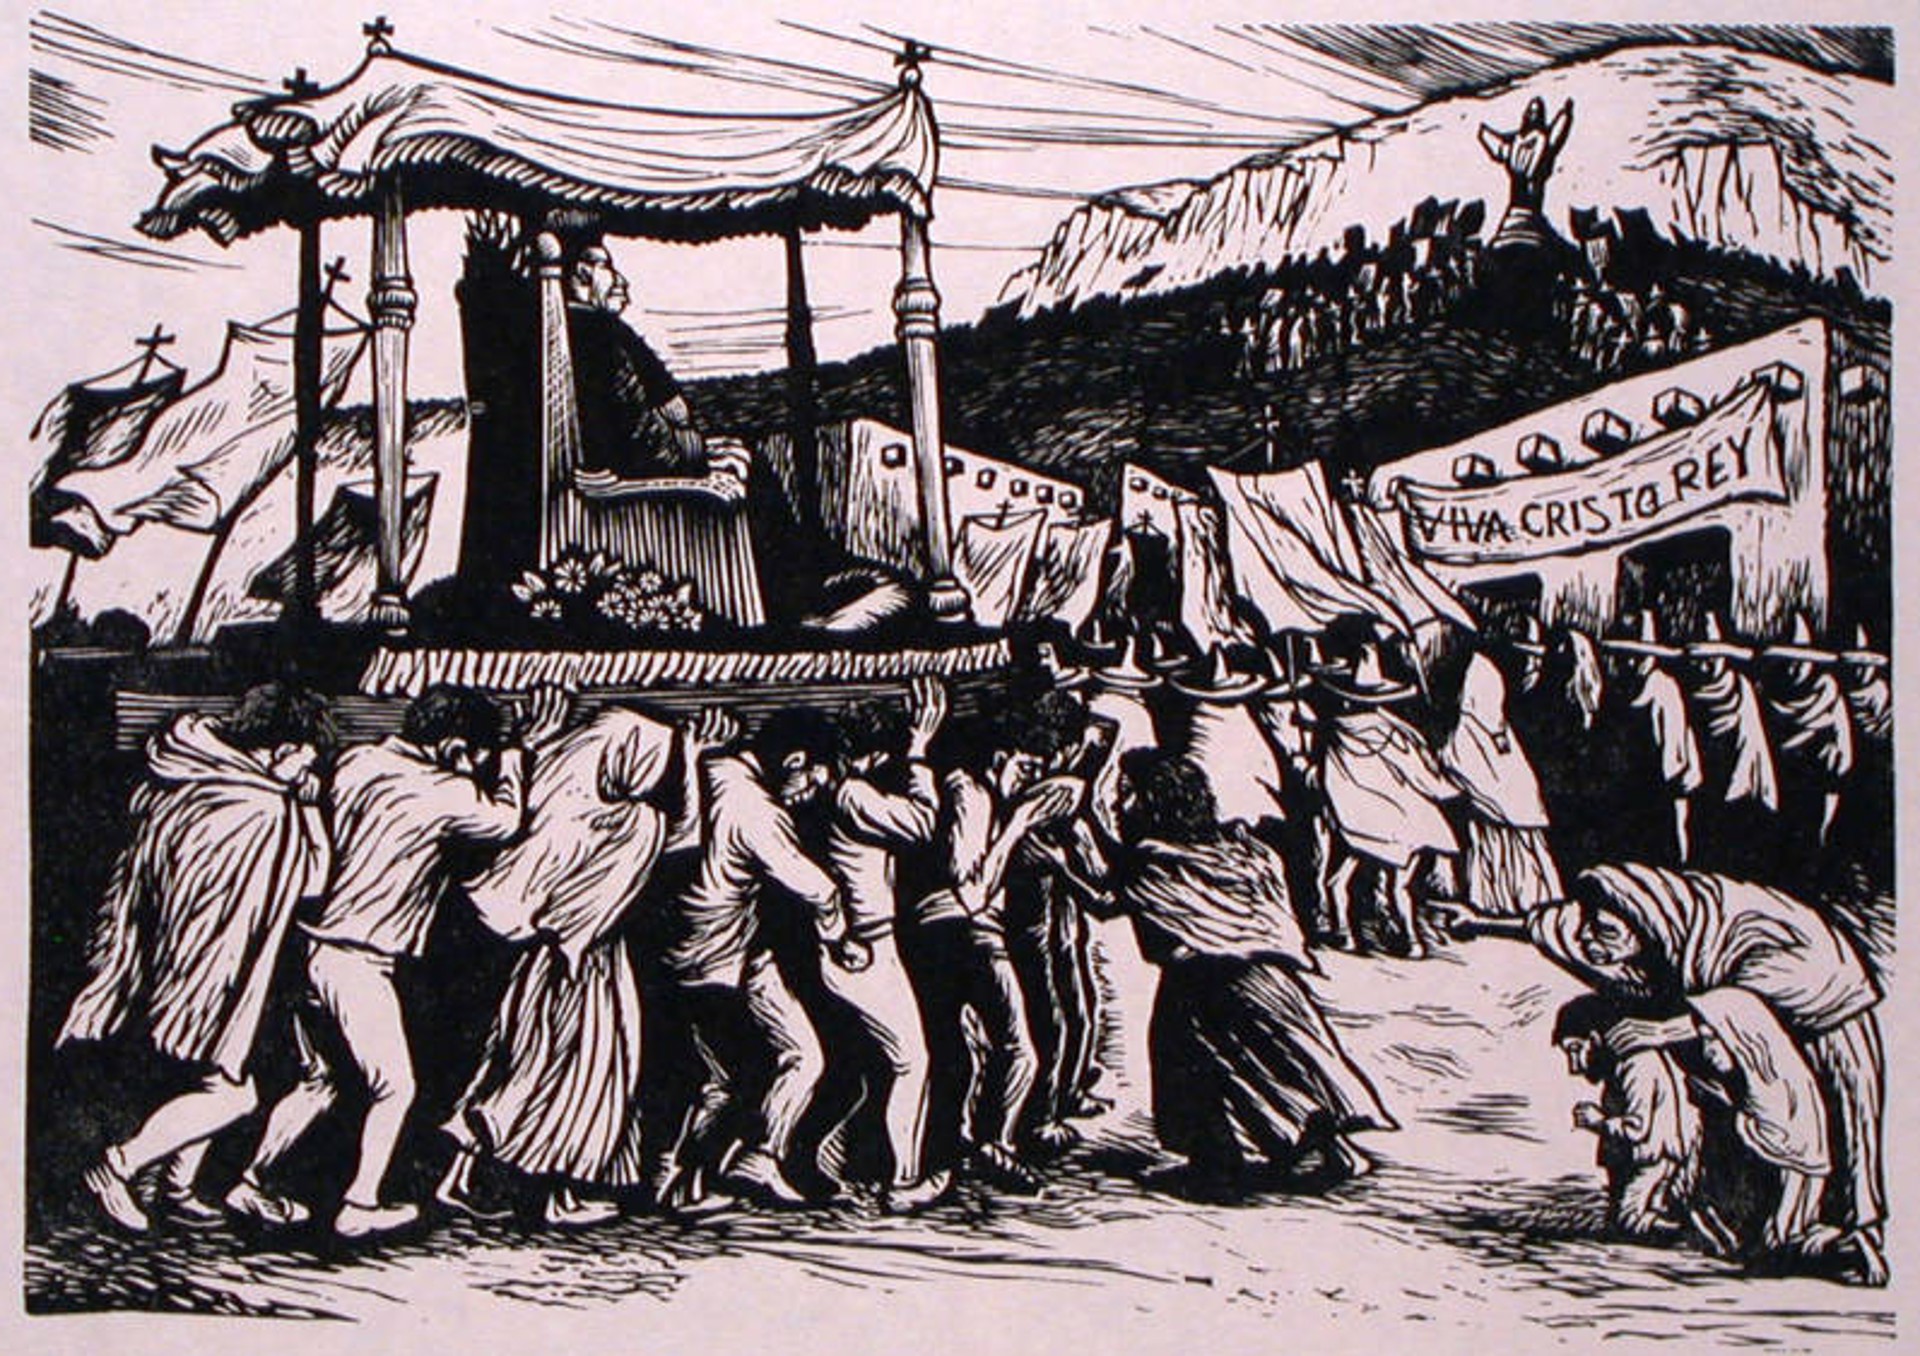 El cerro del cubilete: comienzo de la agitación Cristera 11 de enero de 1923 by Alberto Beltrán